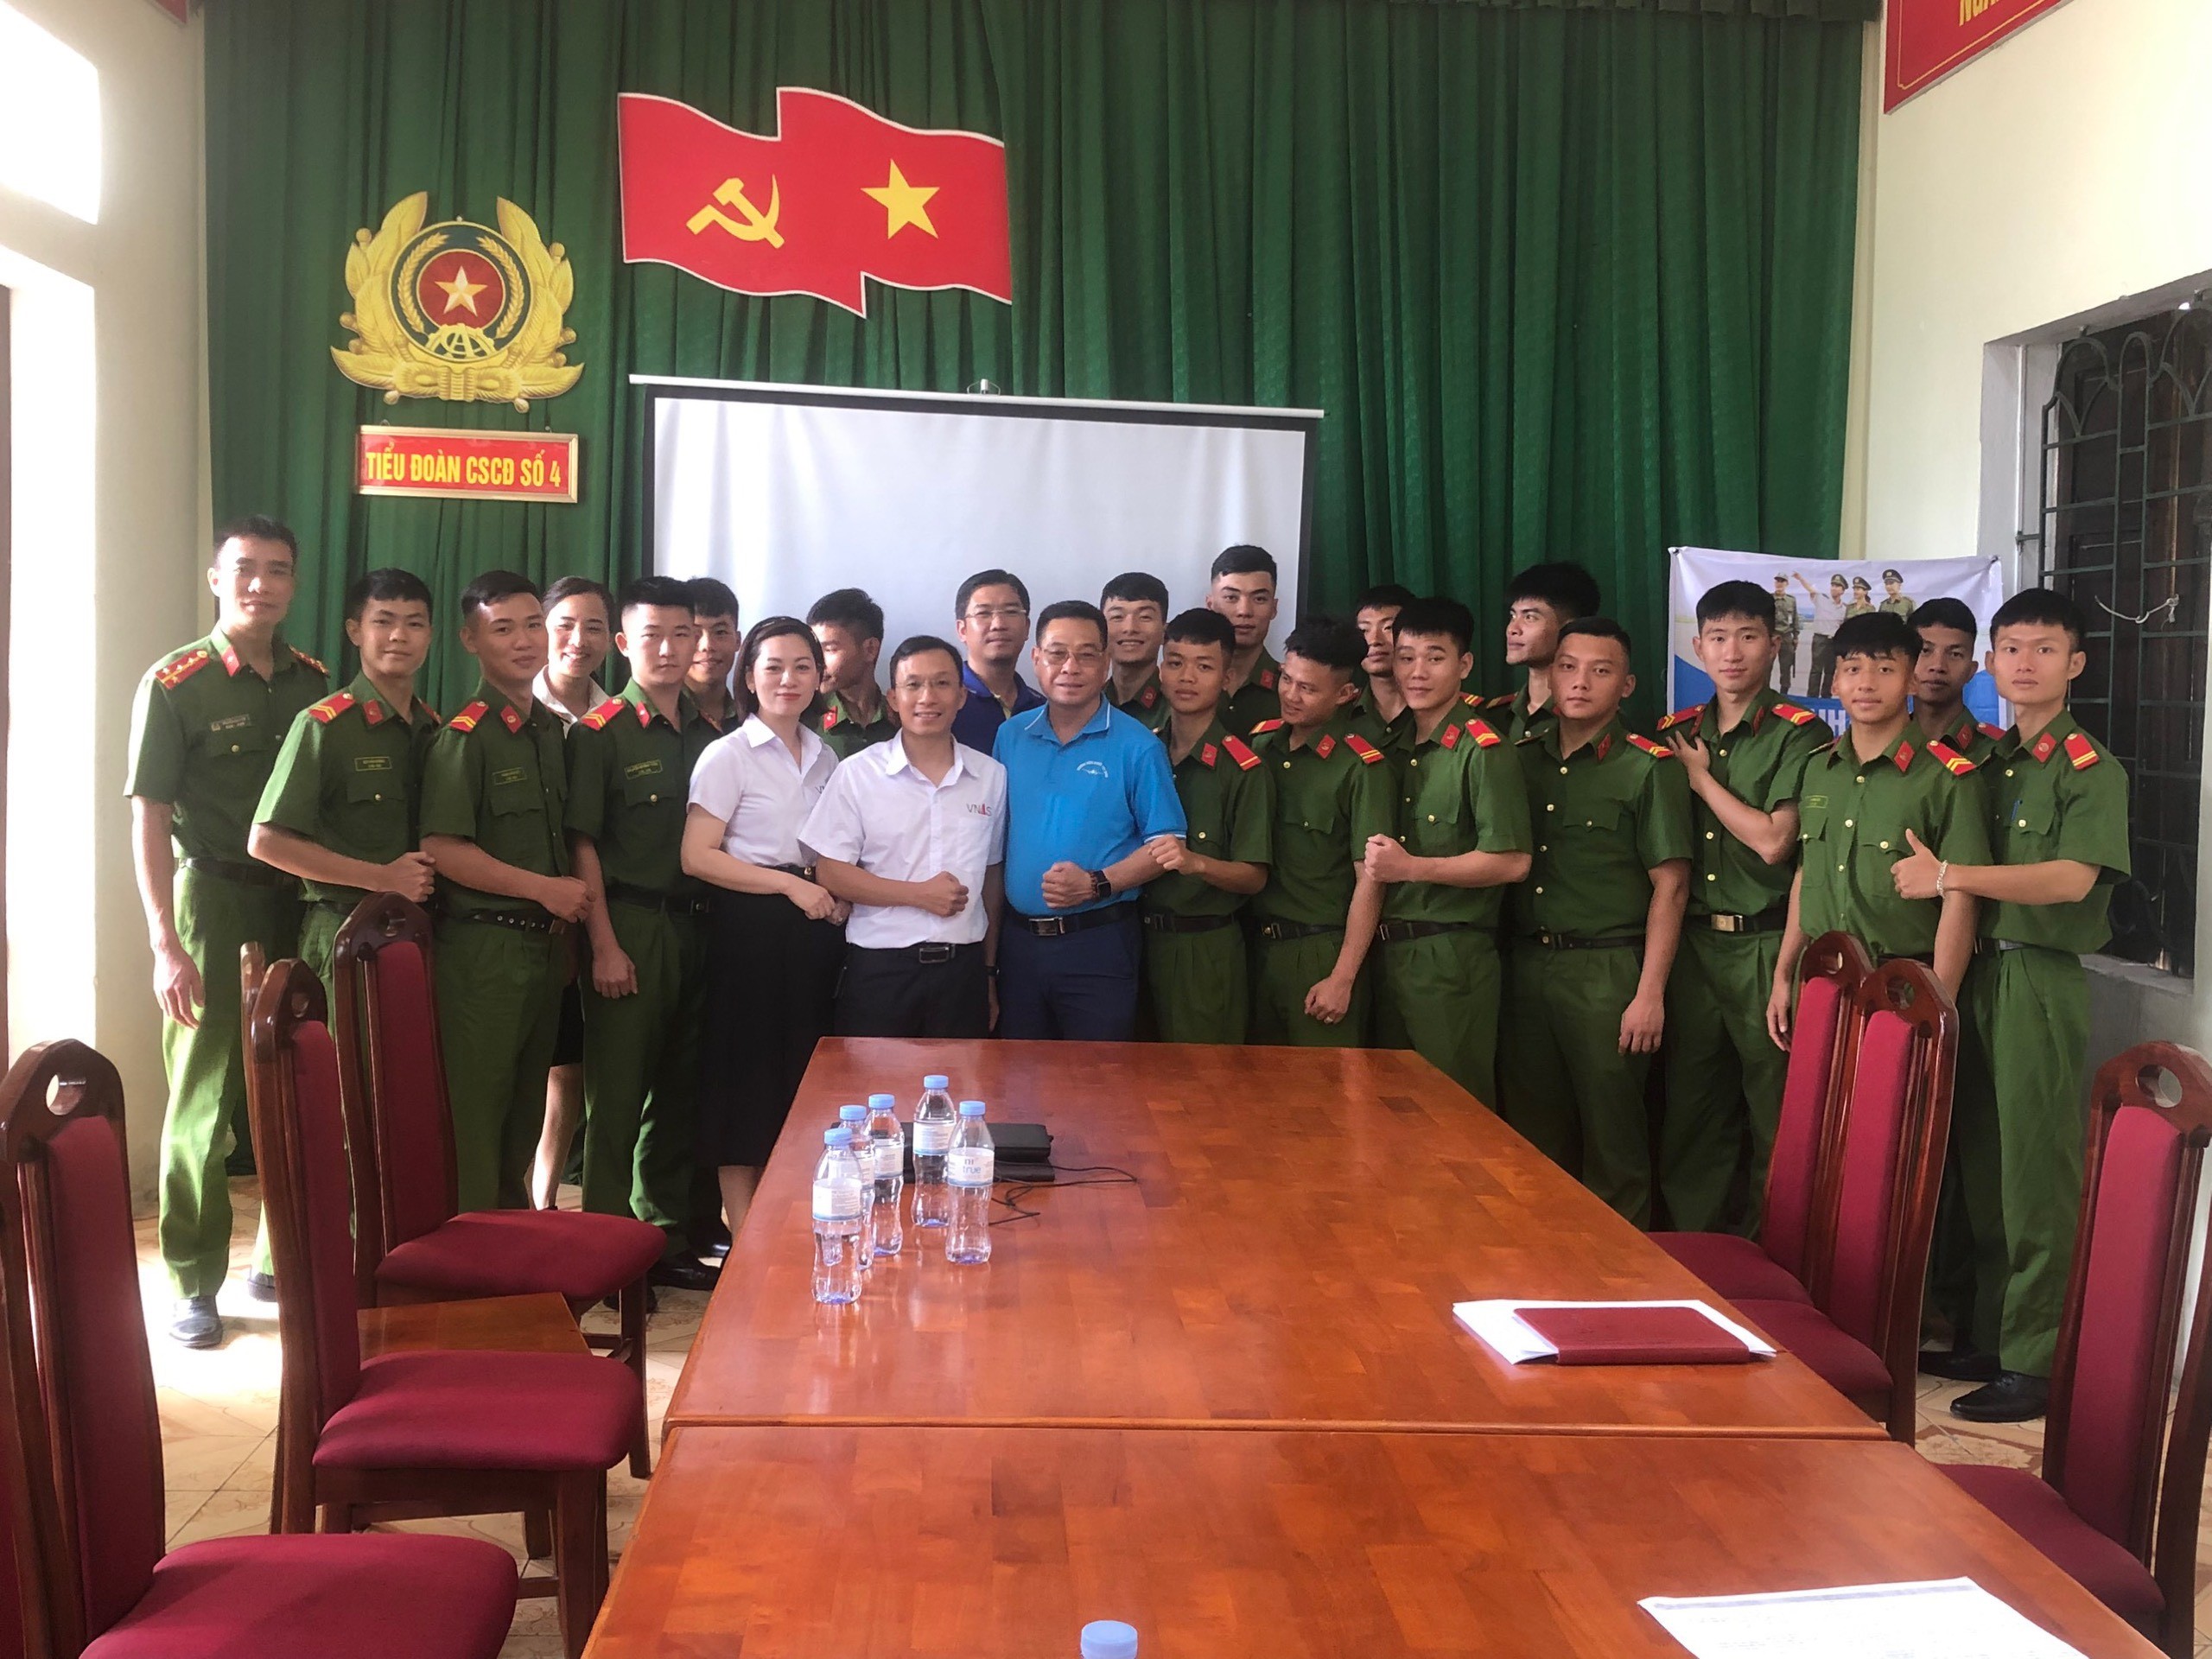 TVăn phòng đại diện Thanh Hóa tổ chức tọa đàm hướng nghiệp cho chiến sỹ nghĩa vụ CAND tại Tiểu đoàn Cảnh sát Cơ động số 4